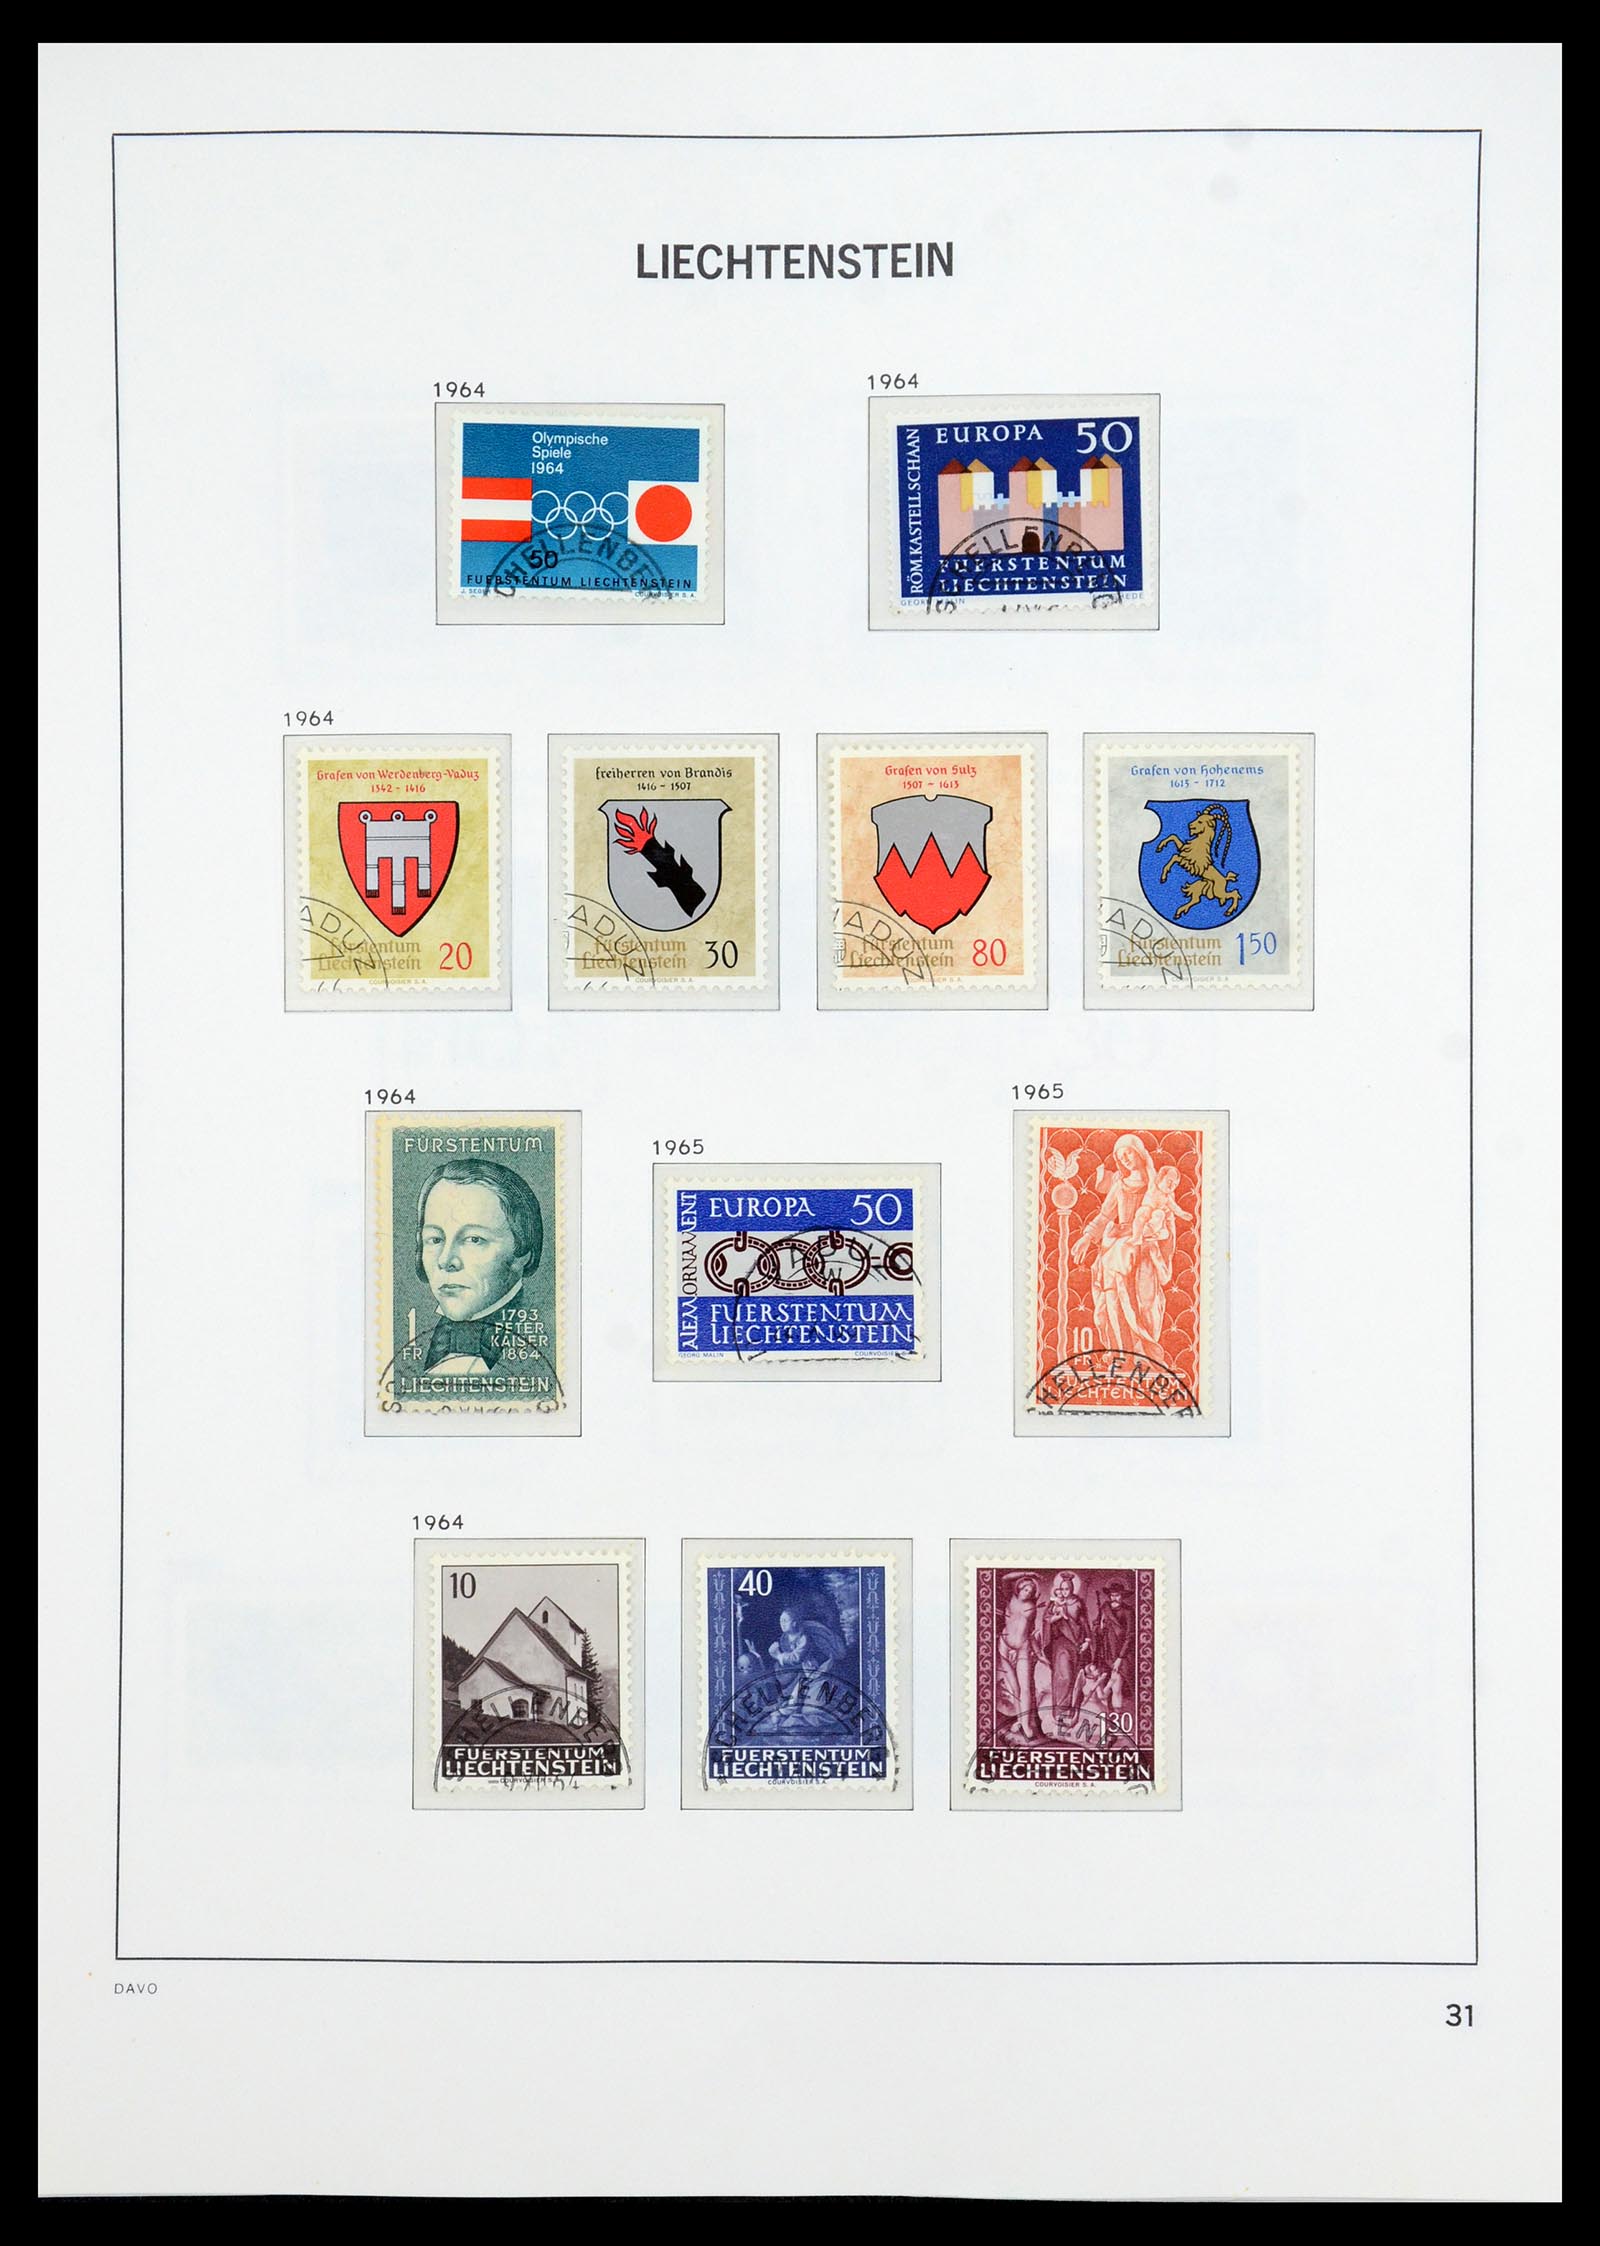 35896 032 - Stamp Collection 35896 Liechtenstein 1912-1990.